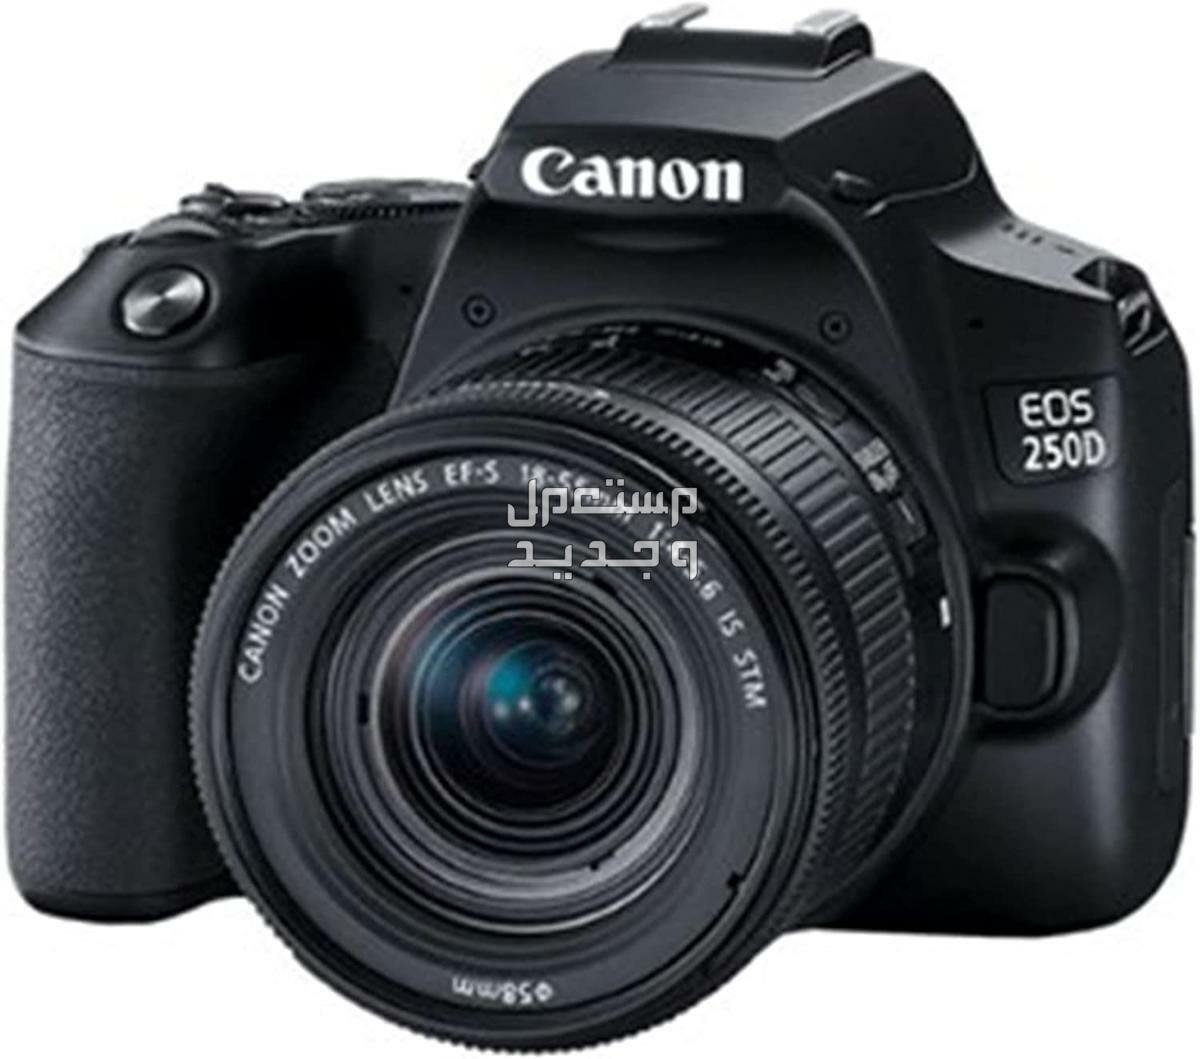 سعر ومميزات ومواصفات أرخص 5 كاميرات تصوير من كانون في ليبيا كاميرا Canon EOS 250D